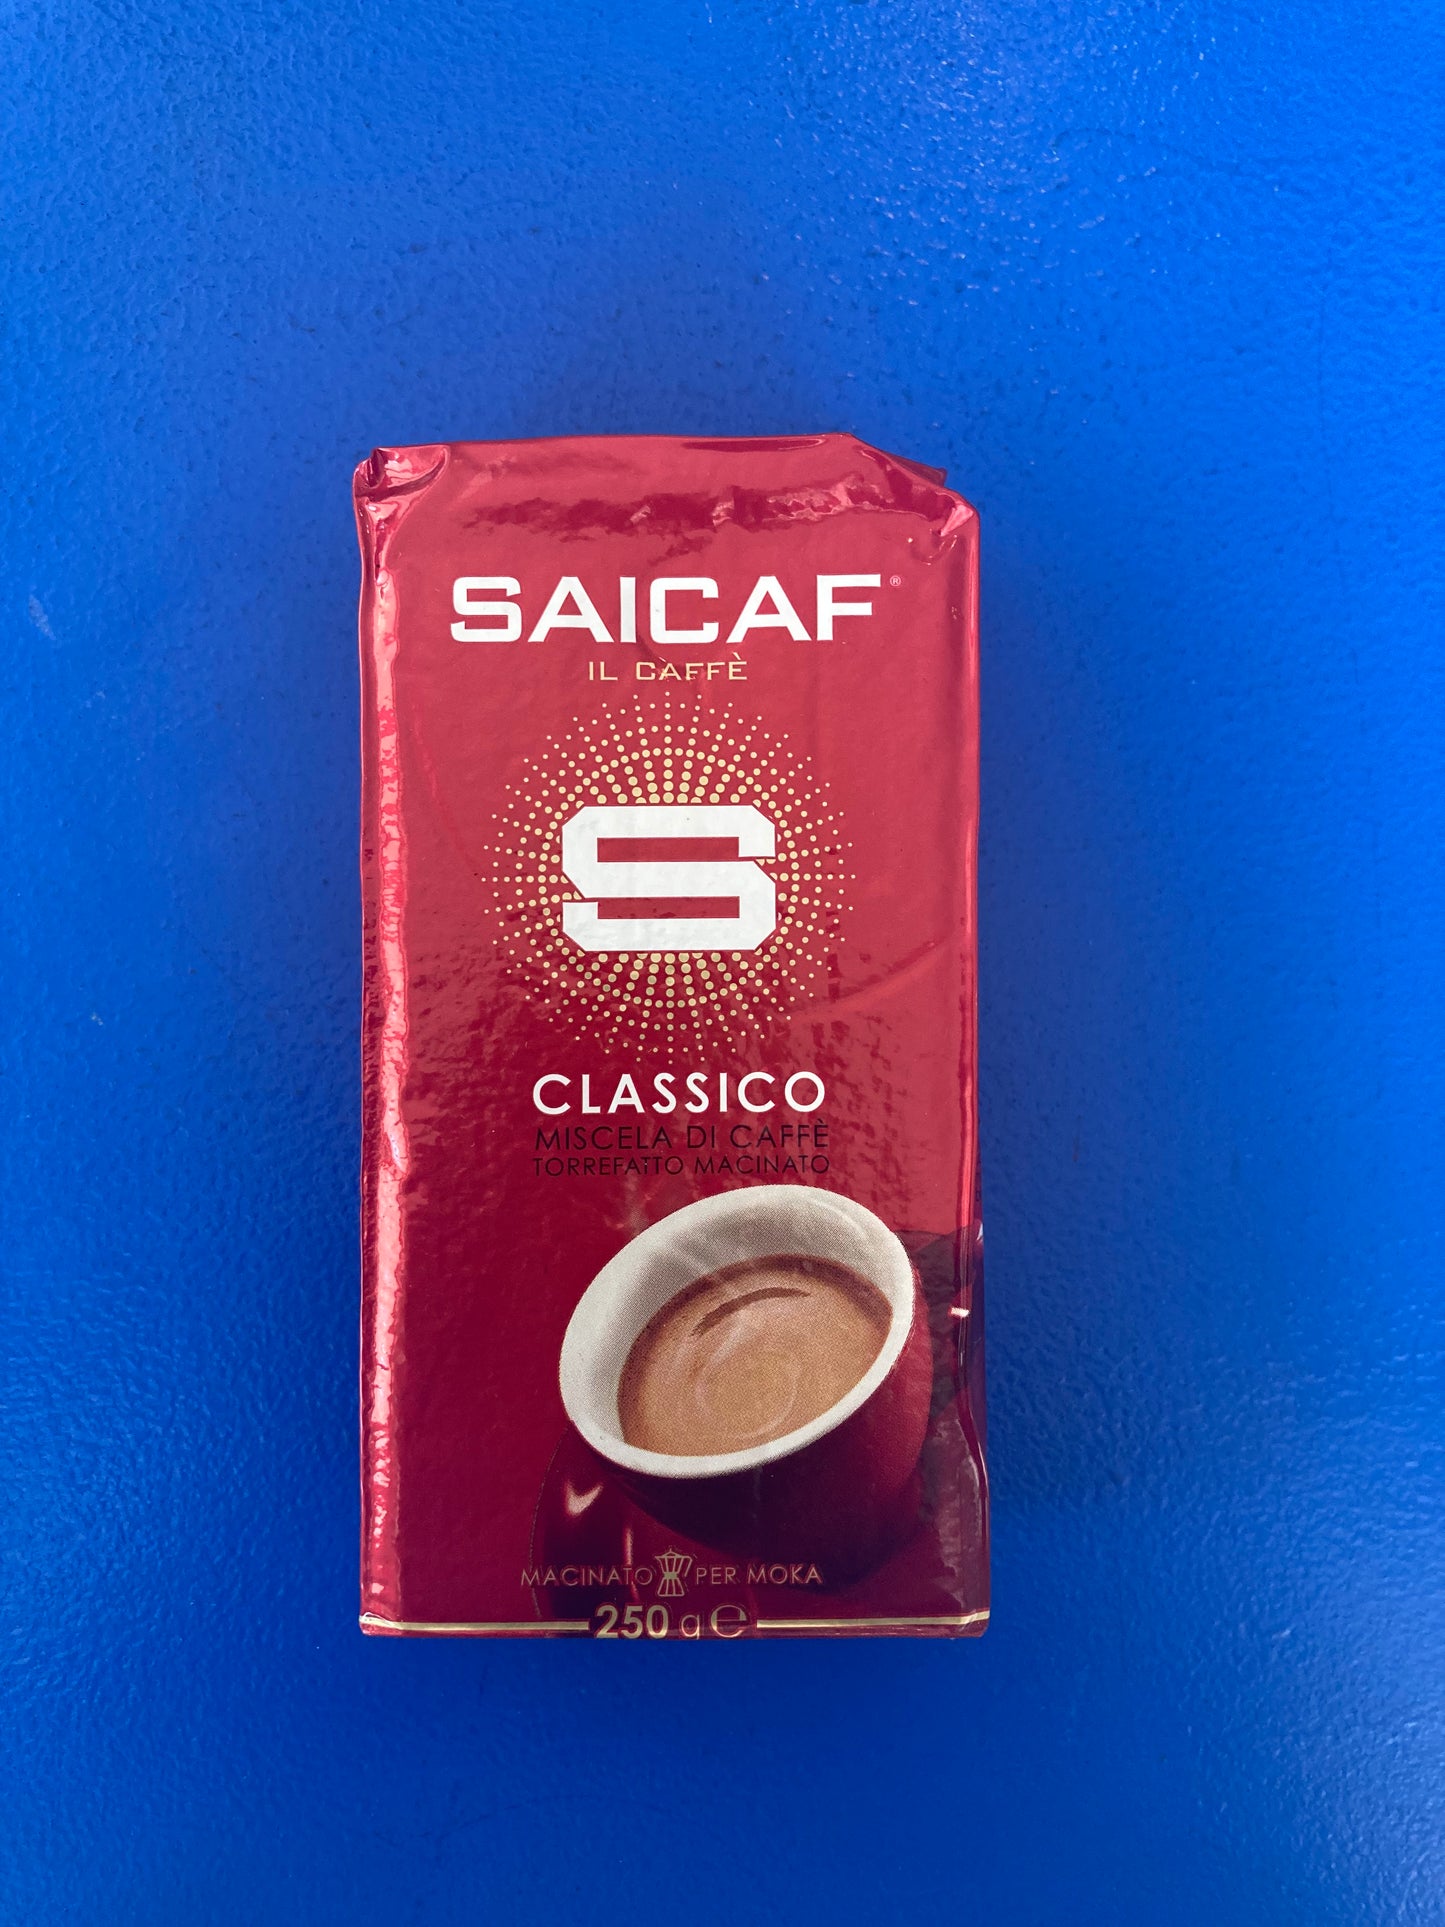 SAICAF IL Caffe Classico Roast Coffee (250g)